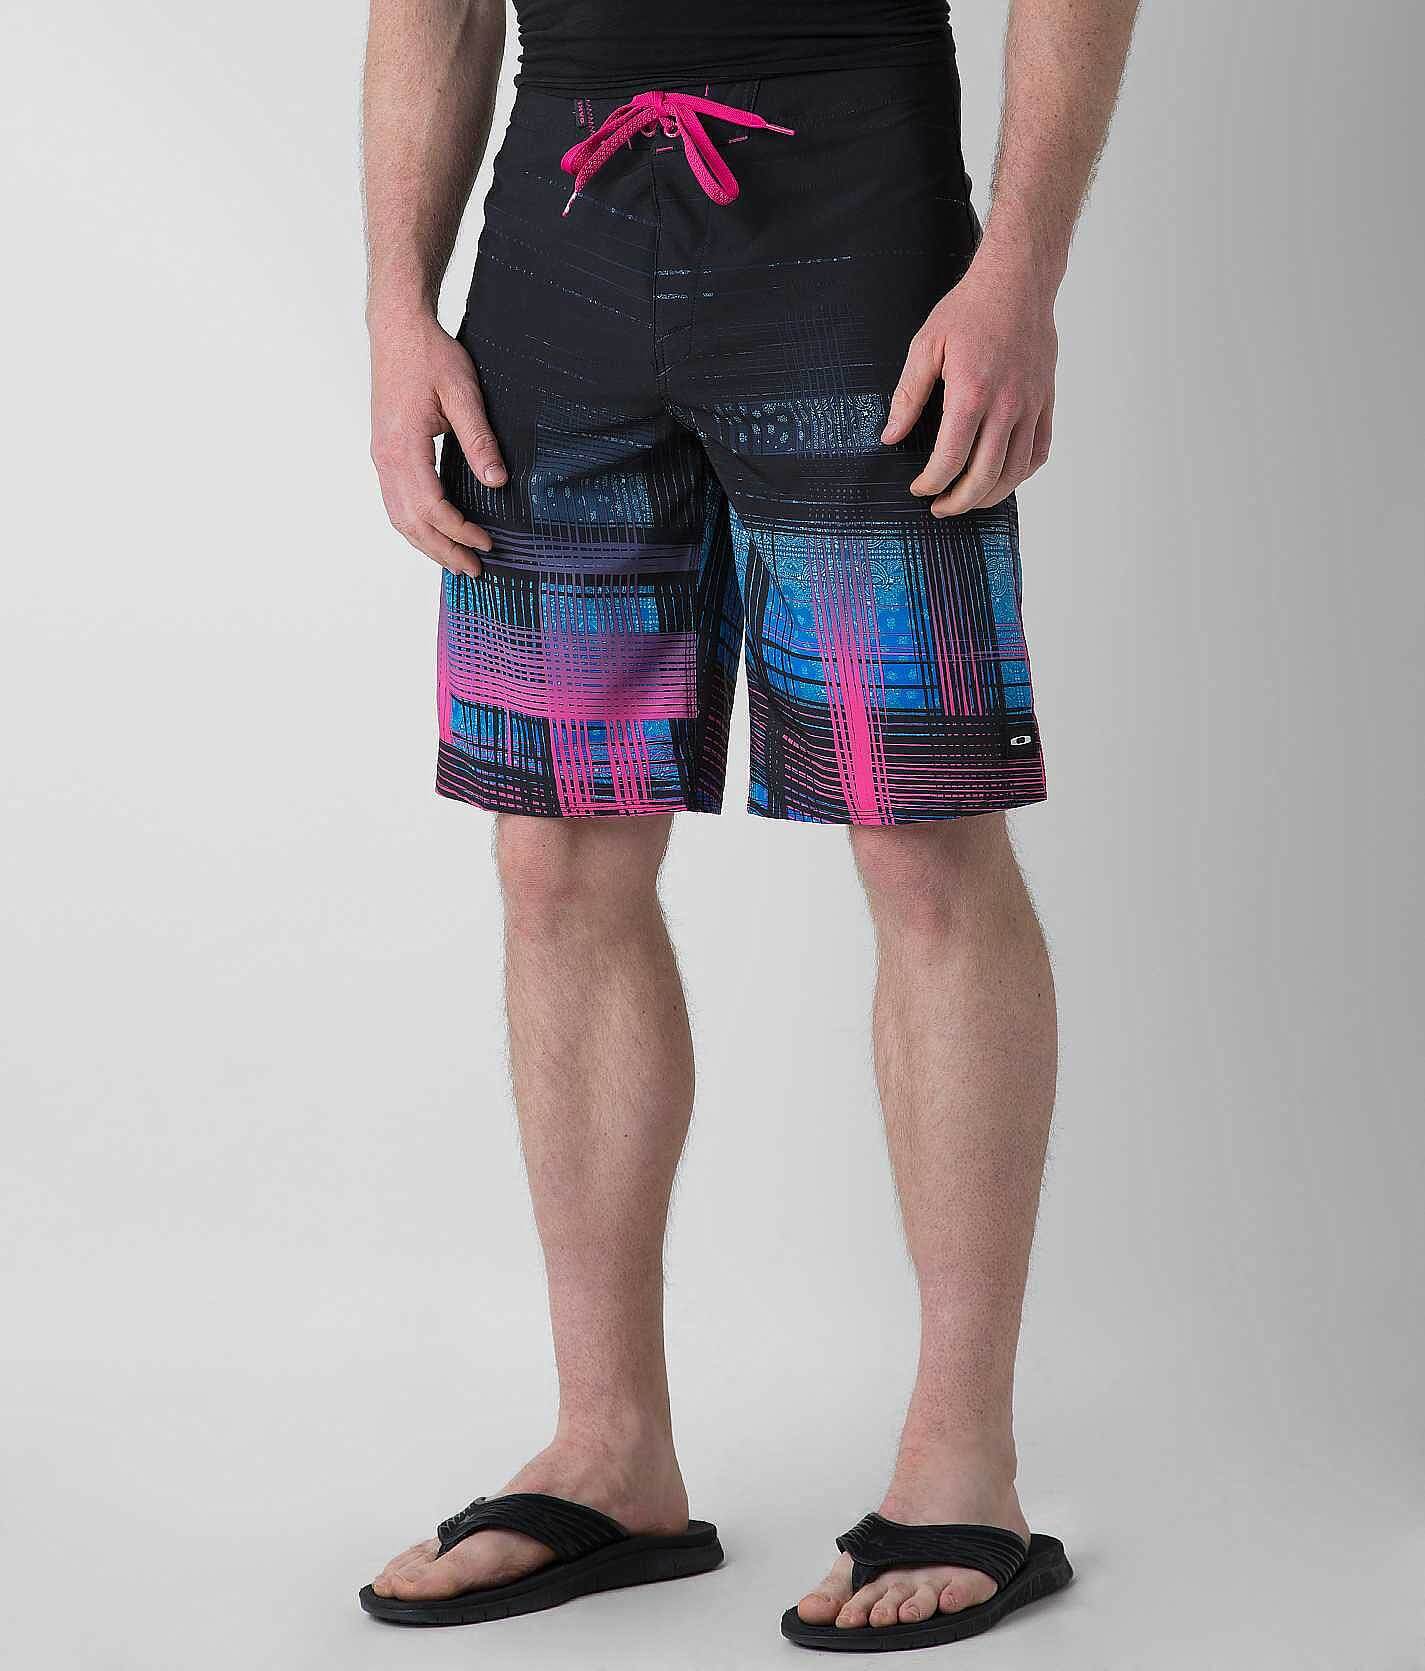 Oakley Gridlock Boardshort - Men's Swimwear in Fuchsia | Buckle